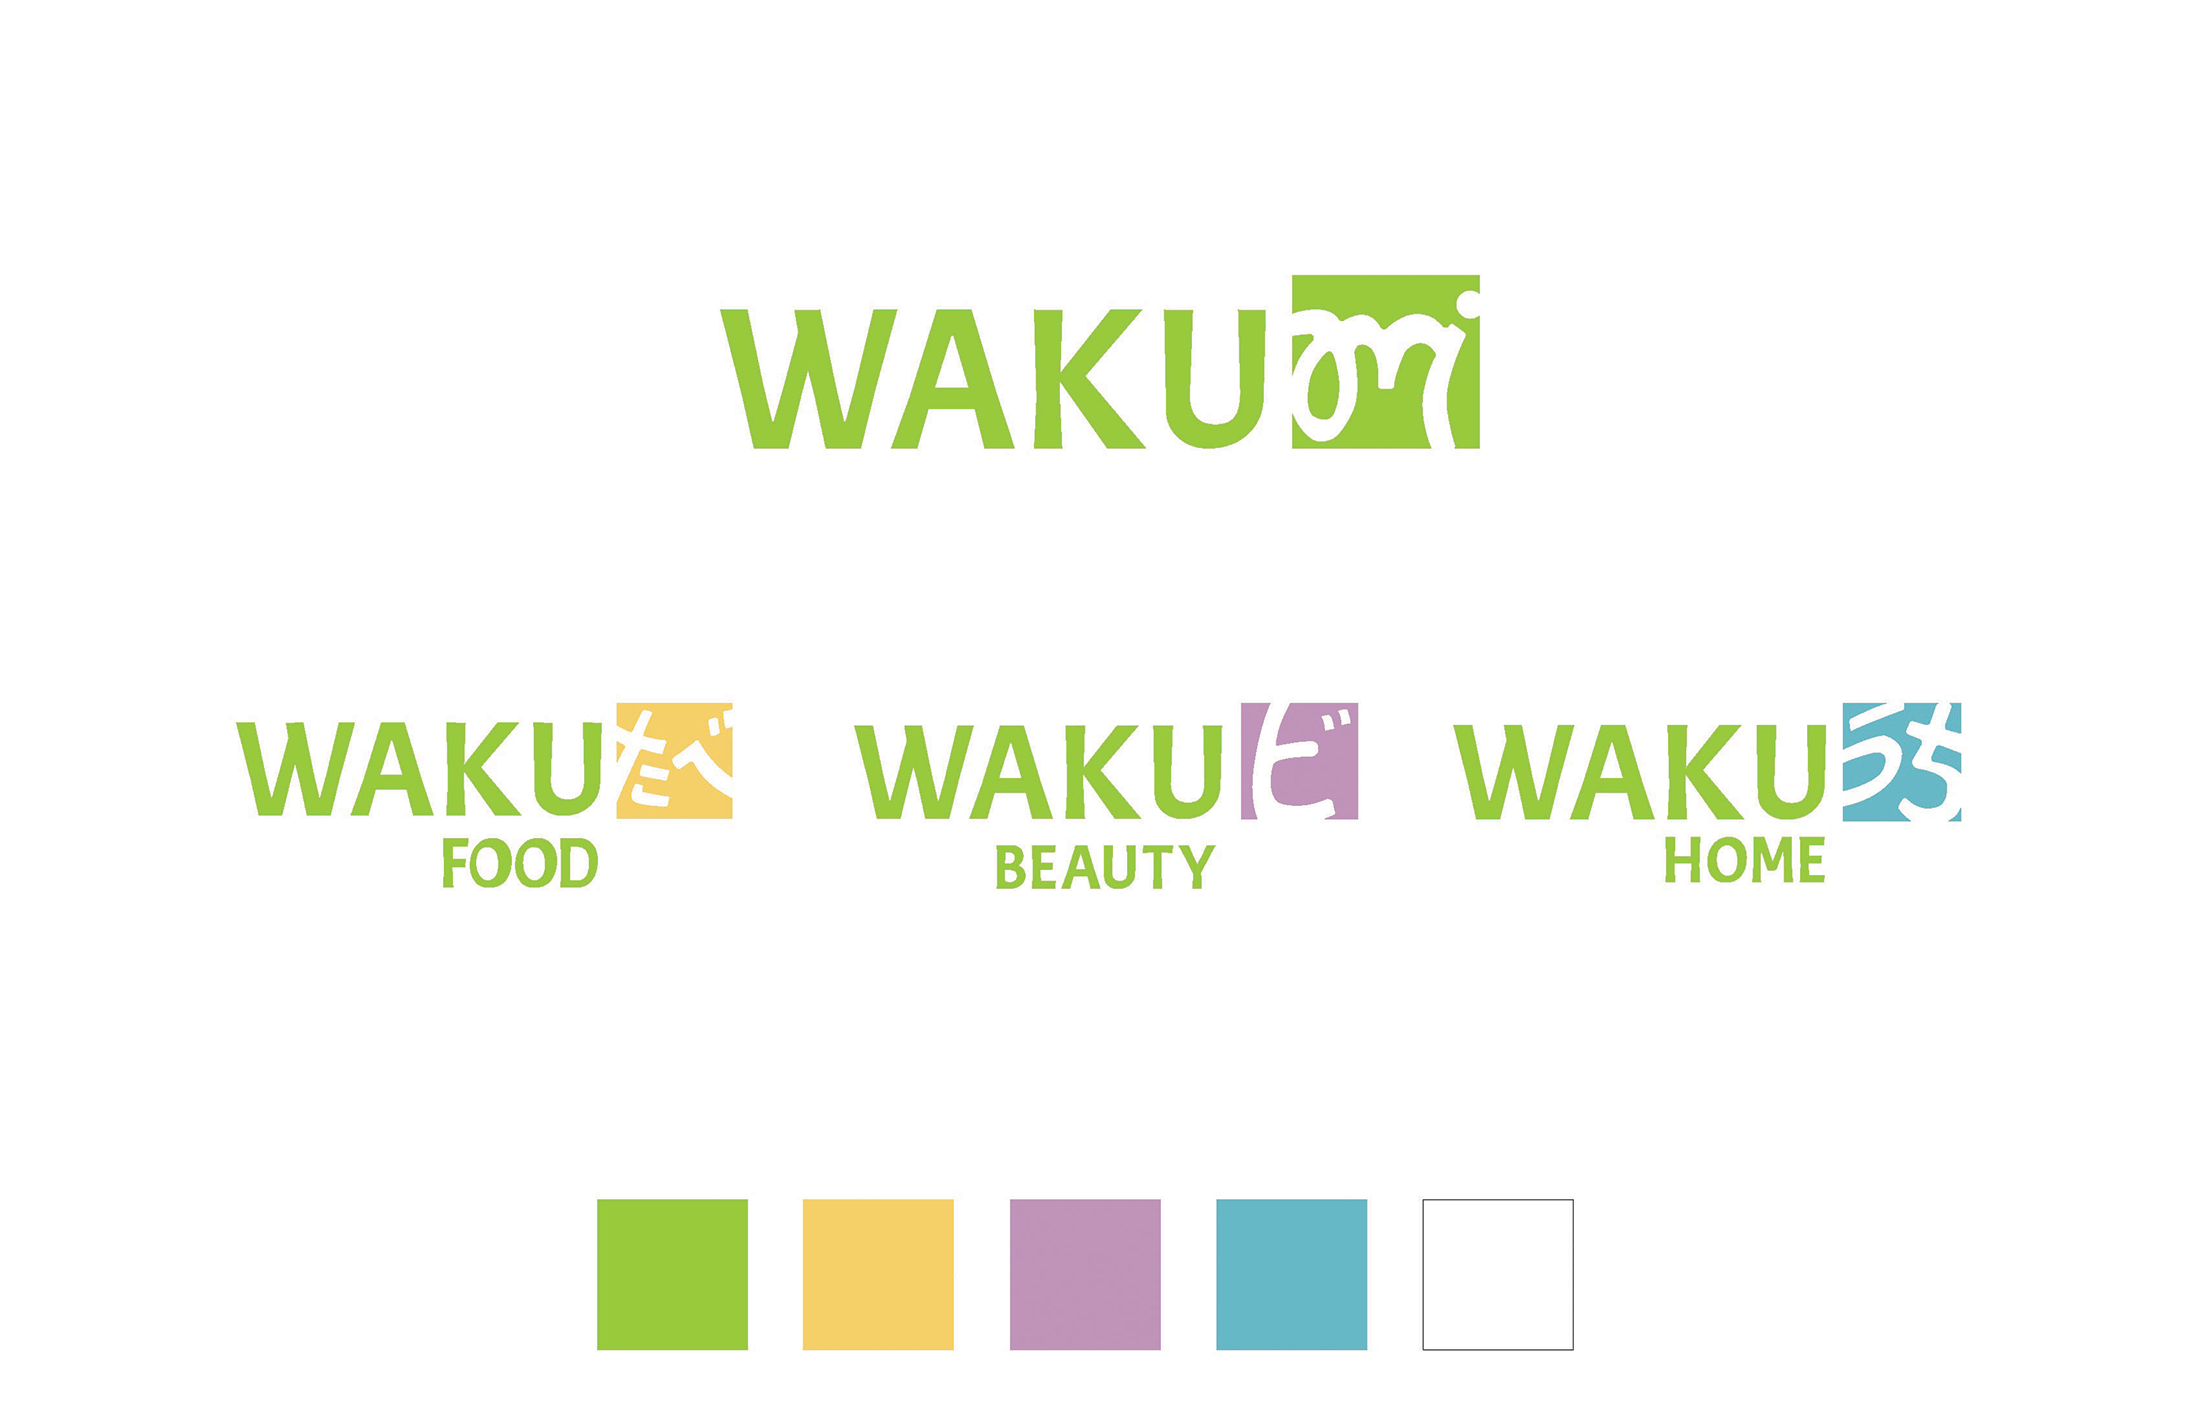 WAKUmi Brand Identity 2